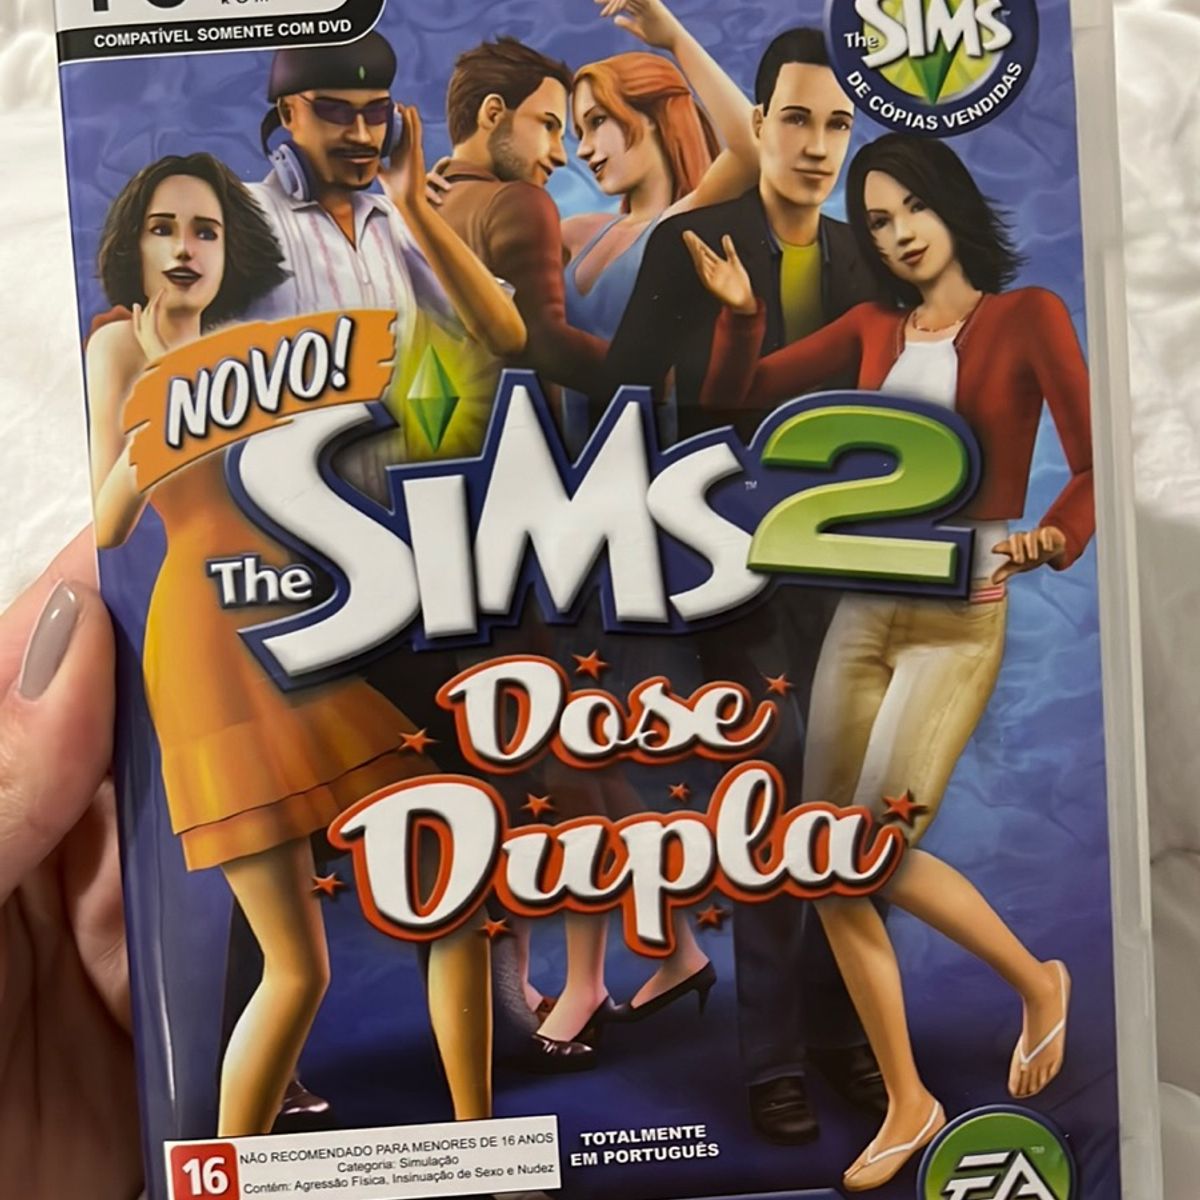 O Sim BR.net - The Sims - The Sims 2 - The Sims 3 - The Sims 4